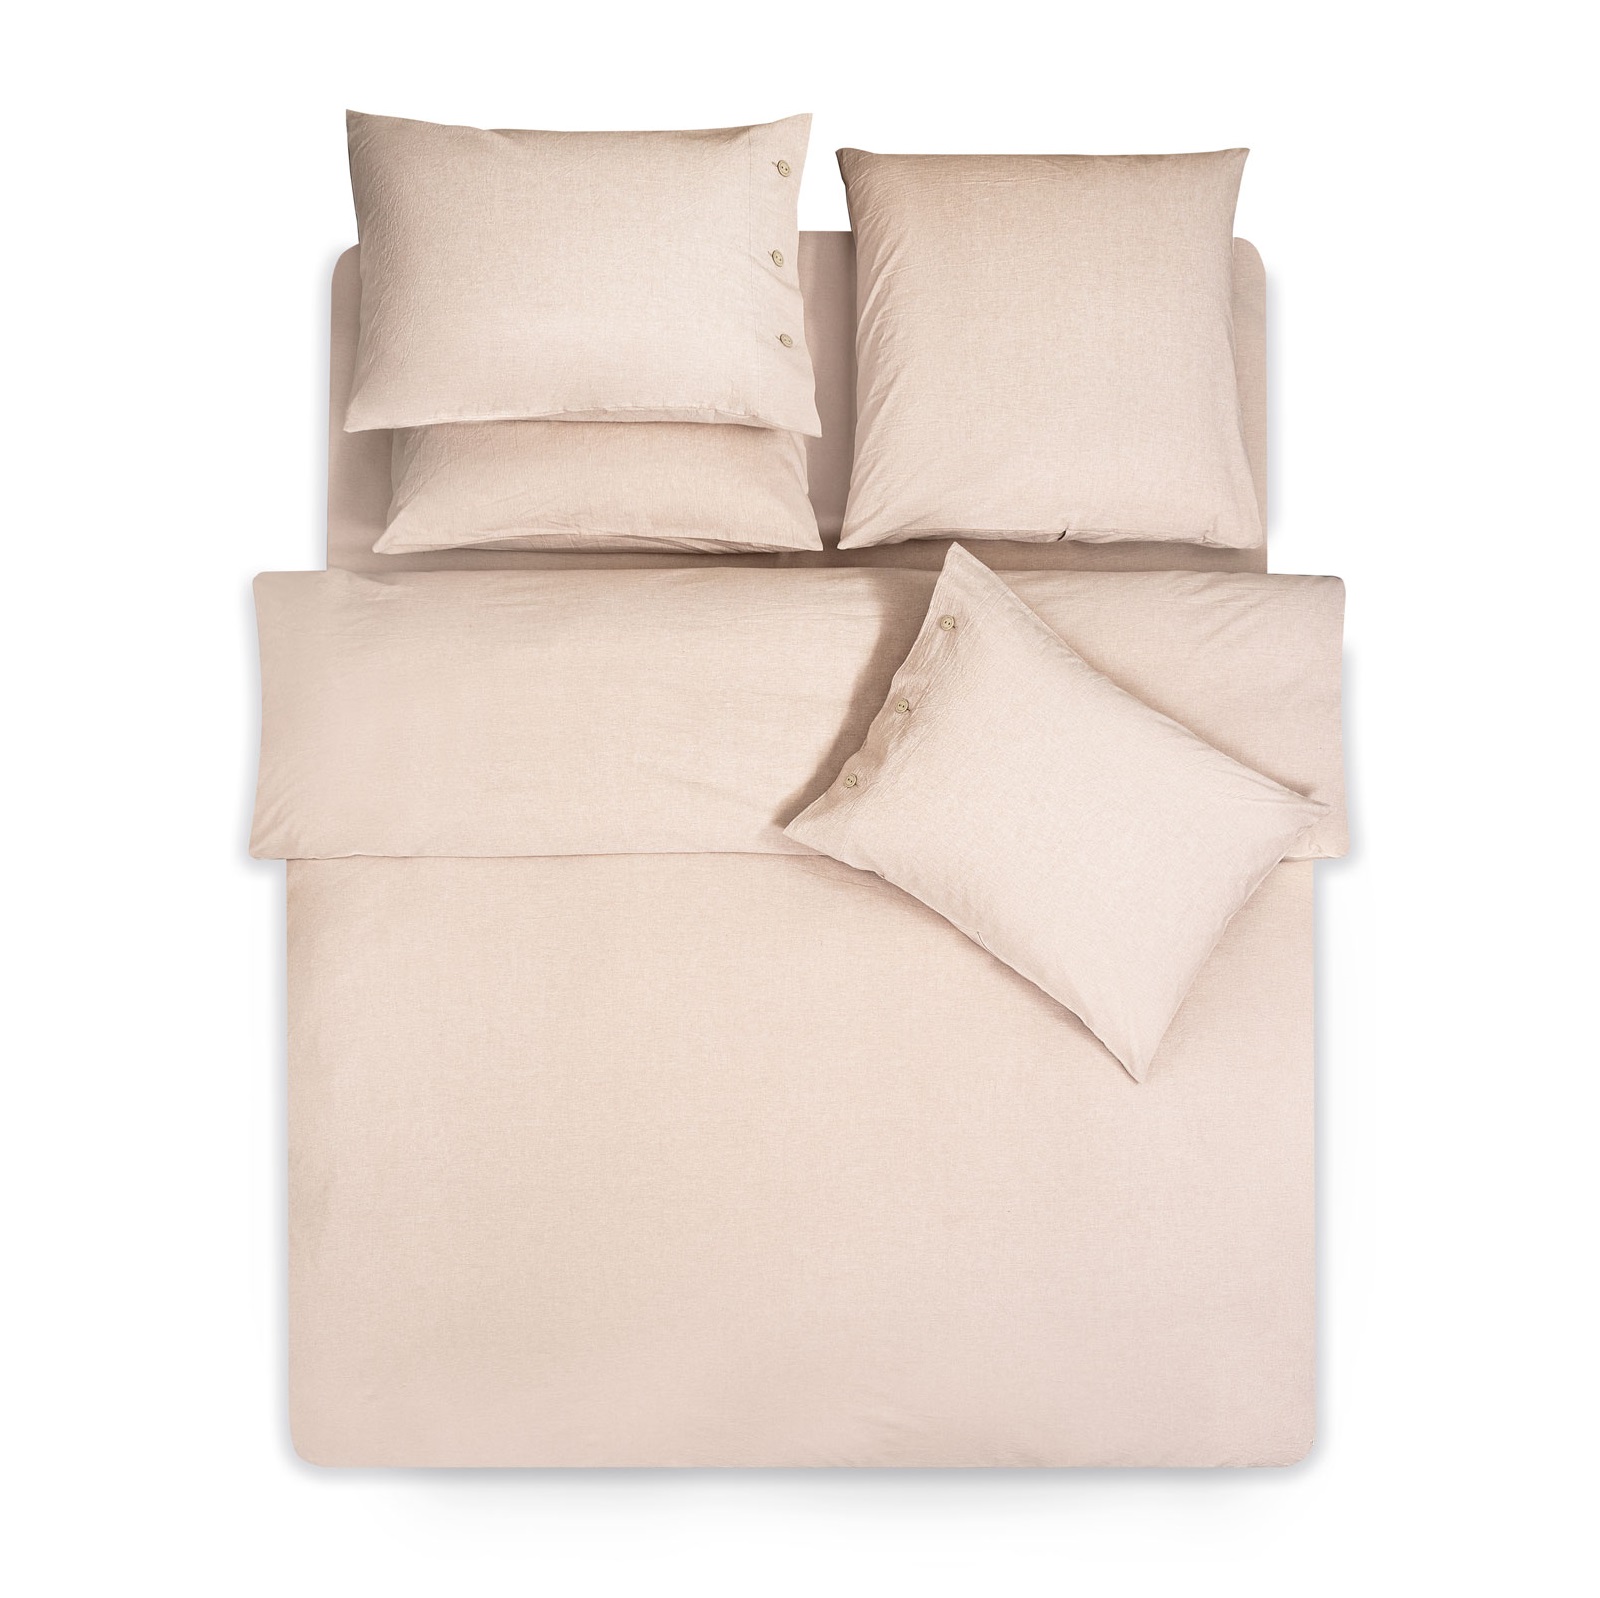 Комплект постельного белья Prime Prive Смоген Полуторный бежевый, размер Полуторный - фото 4